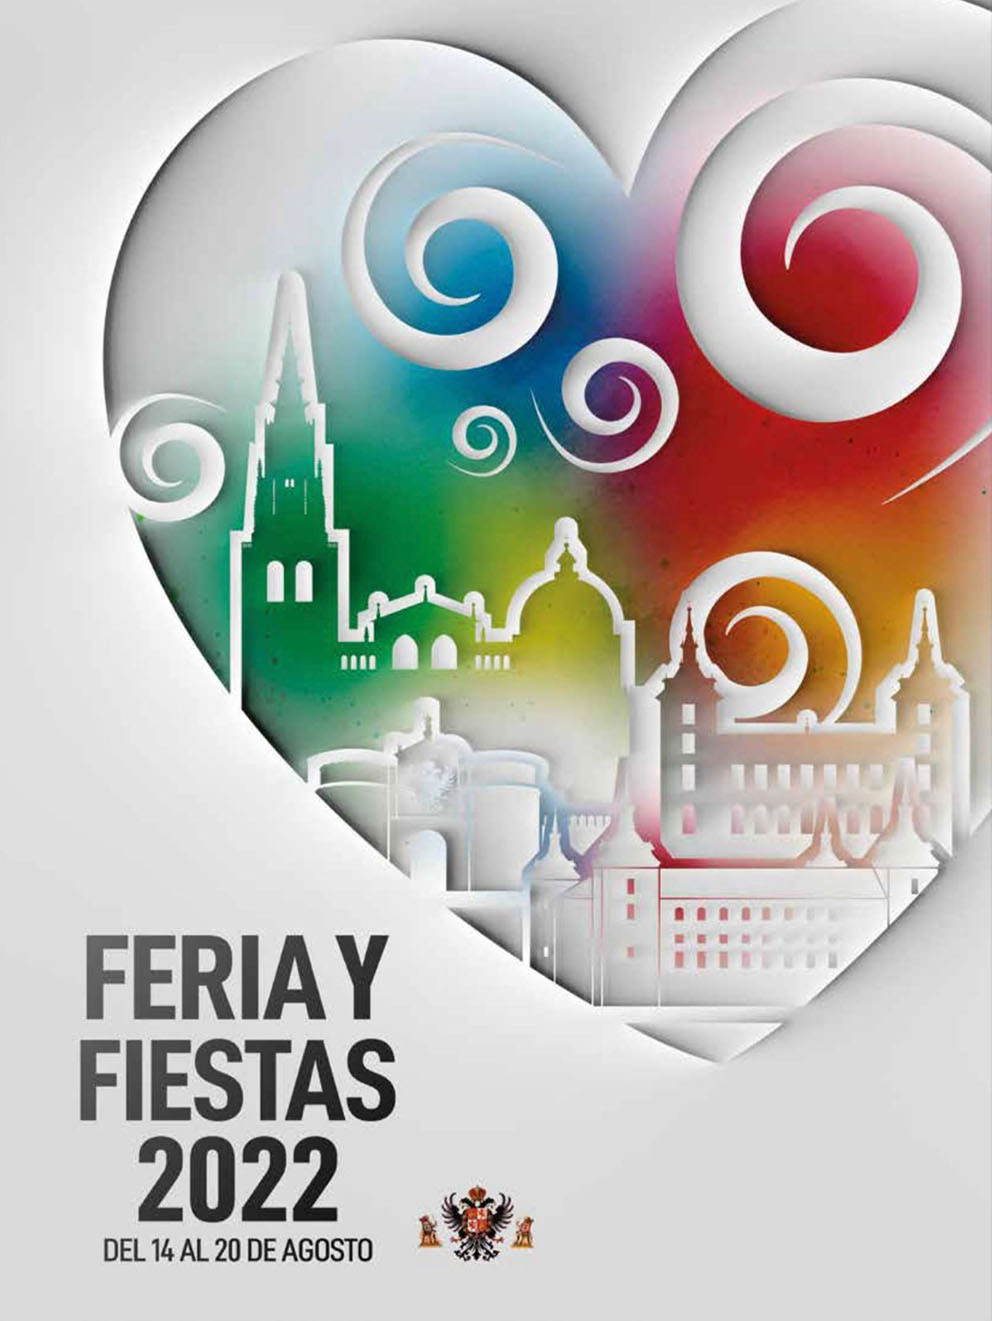 Cartel de la Feria y Fiestas 2022 de Toledo.